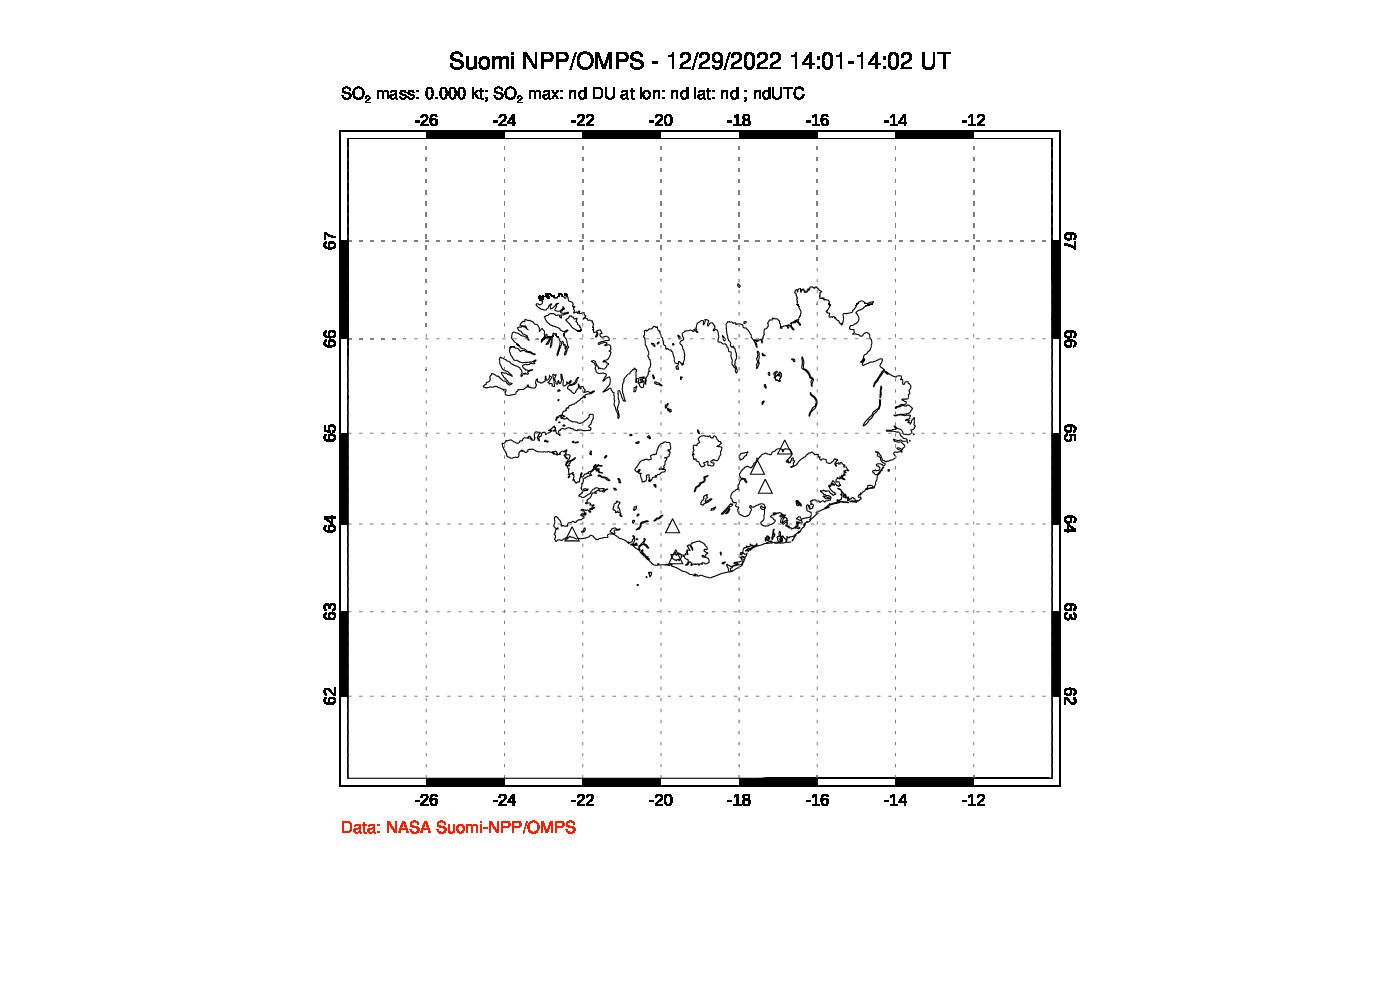 A sulfur dioxide image over Iceland on Dec 29, 2022.